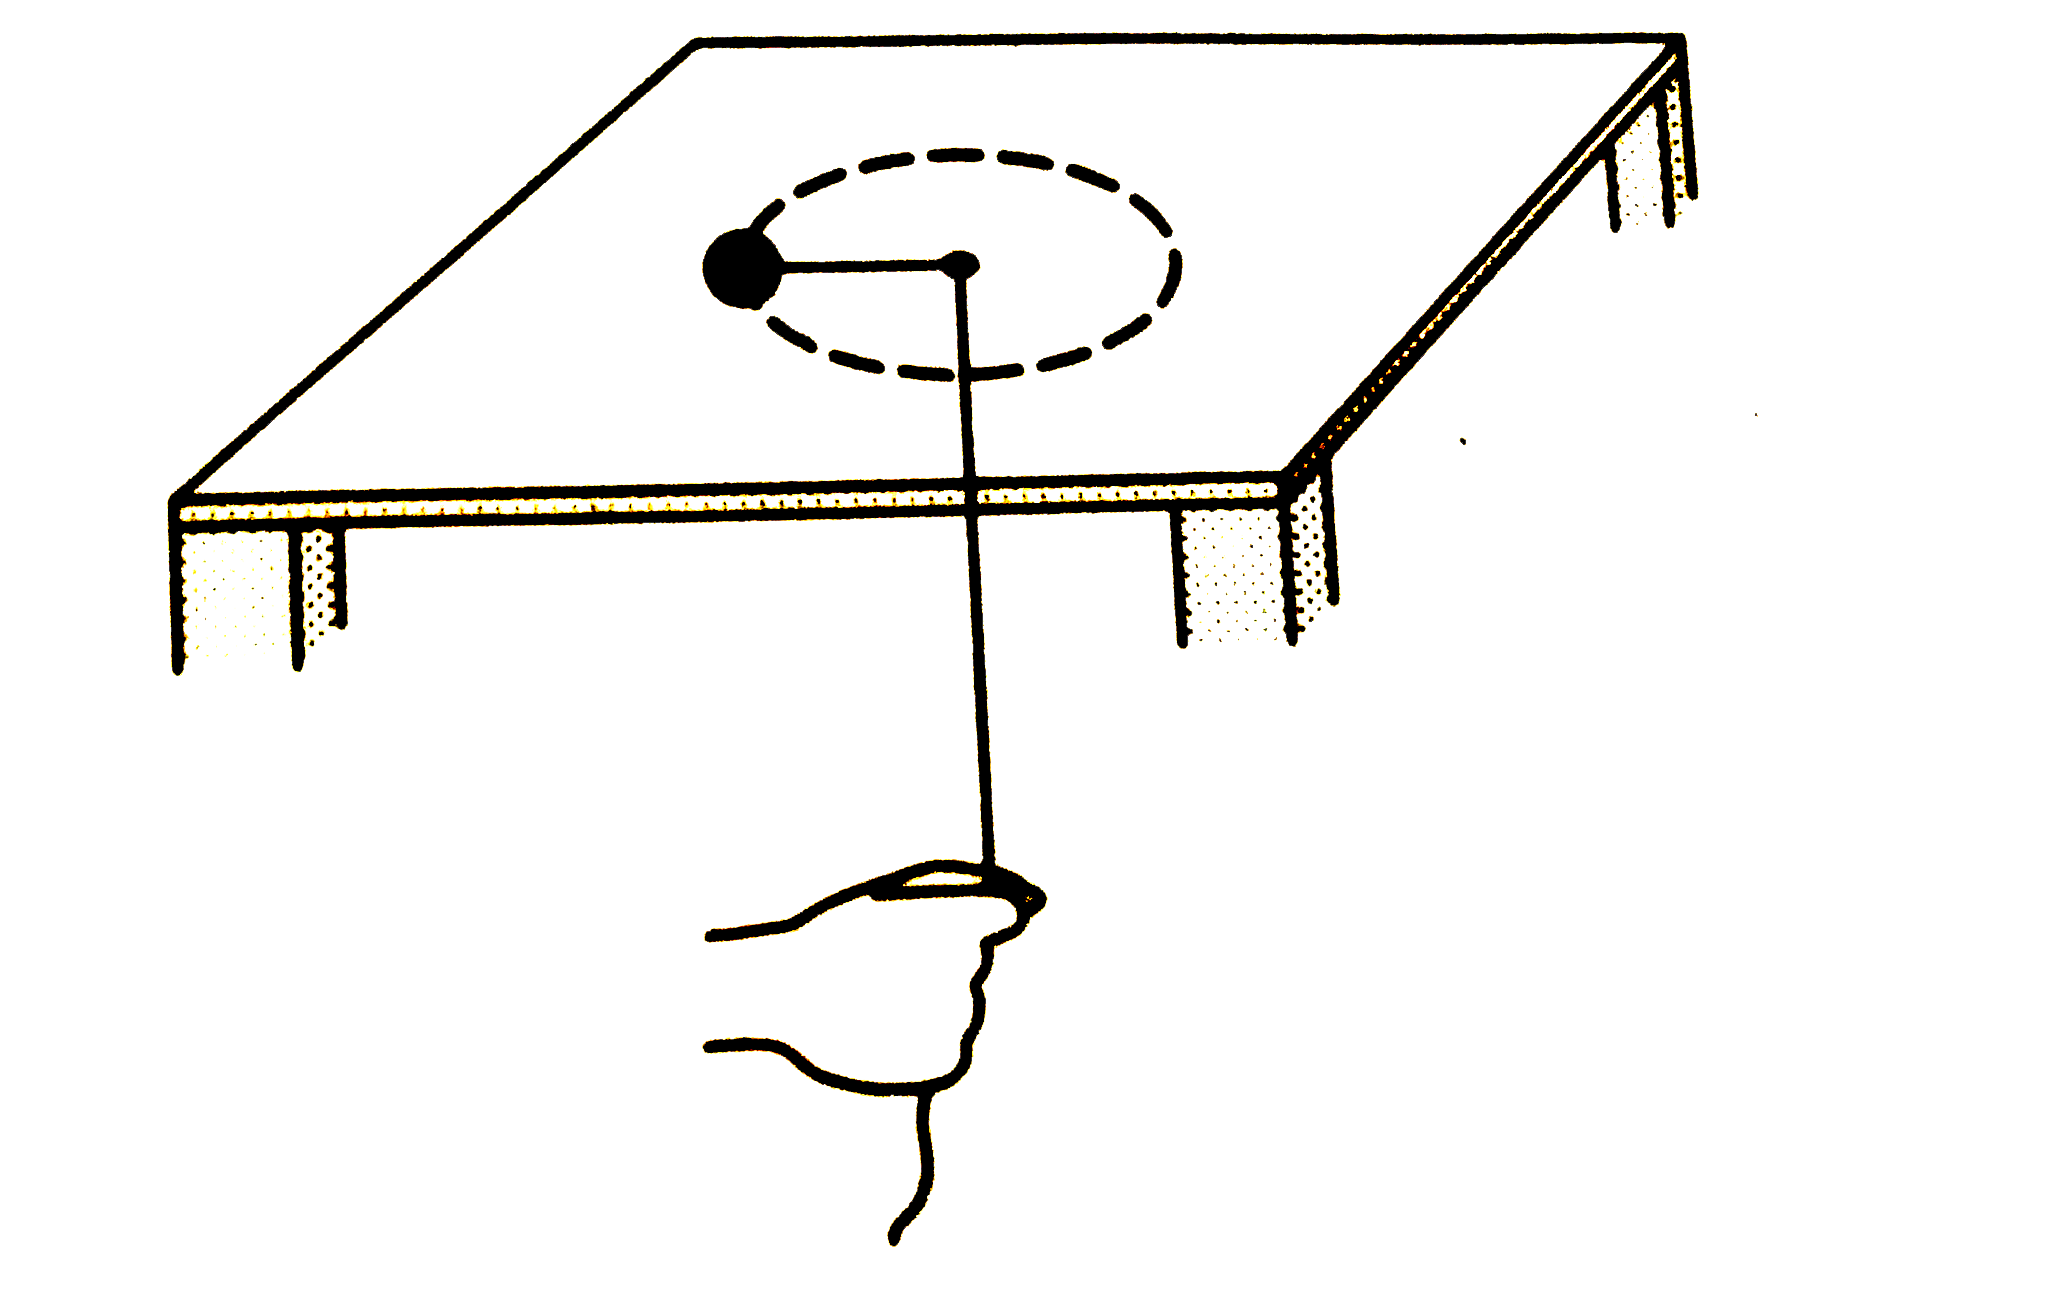 एक चिकनी क्षैतिज टेबुल पर m द्रव्यमान की एक वस्तु रखी है।टेबुल में स्थित एक छेद से एक रस्सी जा रहा है जिसका एक सिरा इस वस्तु से बंधा है और दूसरा सिरा एक व्यक्ति द्वारा पकड़ा हुआ  है (चित्र 18.W7) । प्रारंभ में बस्तु टेबुल की सतह पर त्रिज्या के एक वृत्त में v0 चाल से चल रही है। व्यक्ति रस्सी को धीरे-धीरे नीचे खींचता है जिससे वस्तु का परथ बदलता जाता है। अंत में वस्तु r  त्रिज्या के वृत्त में घूमने लगती है। (a) अतिम स्थिति में रस्सी का तनाव तथा (b) वस्तु की गतिज ऊर्जा में पारिवर्तन का मान ज्ञात करें